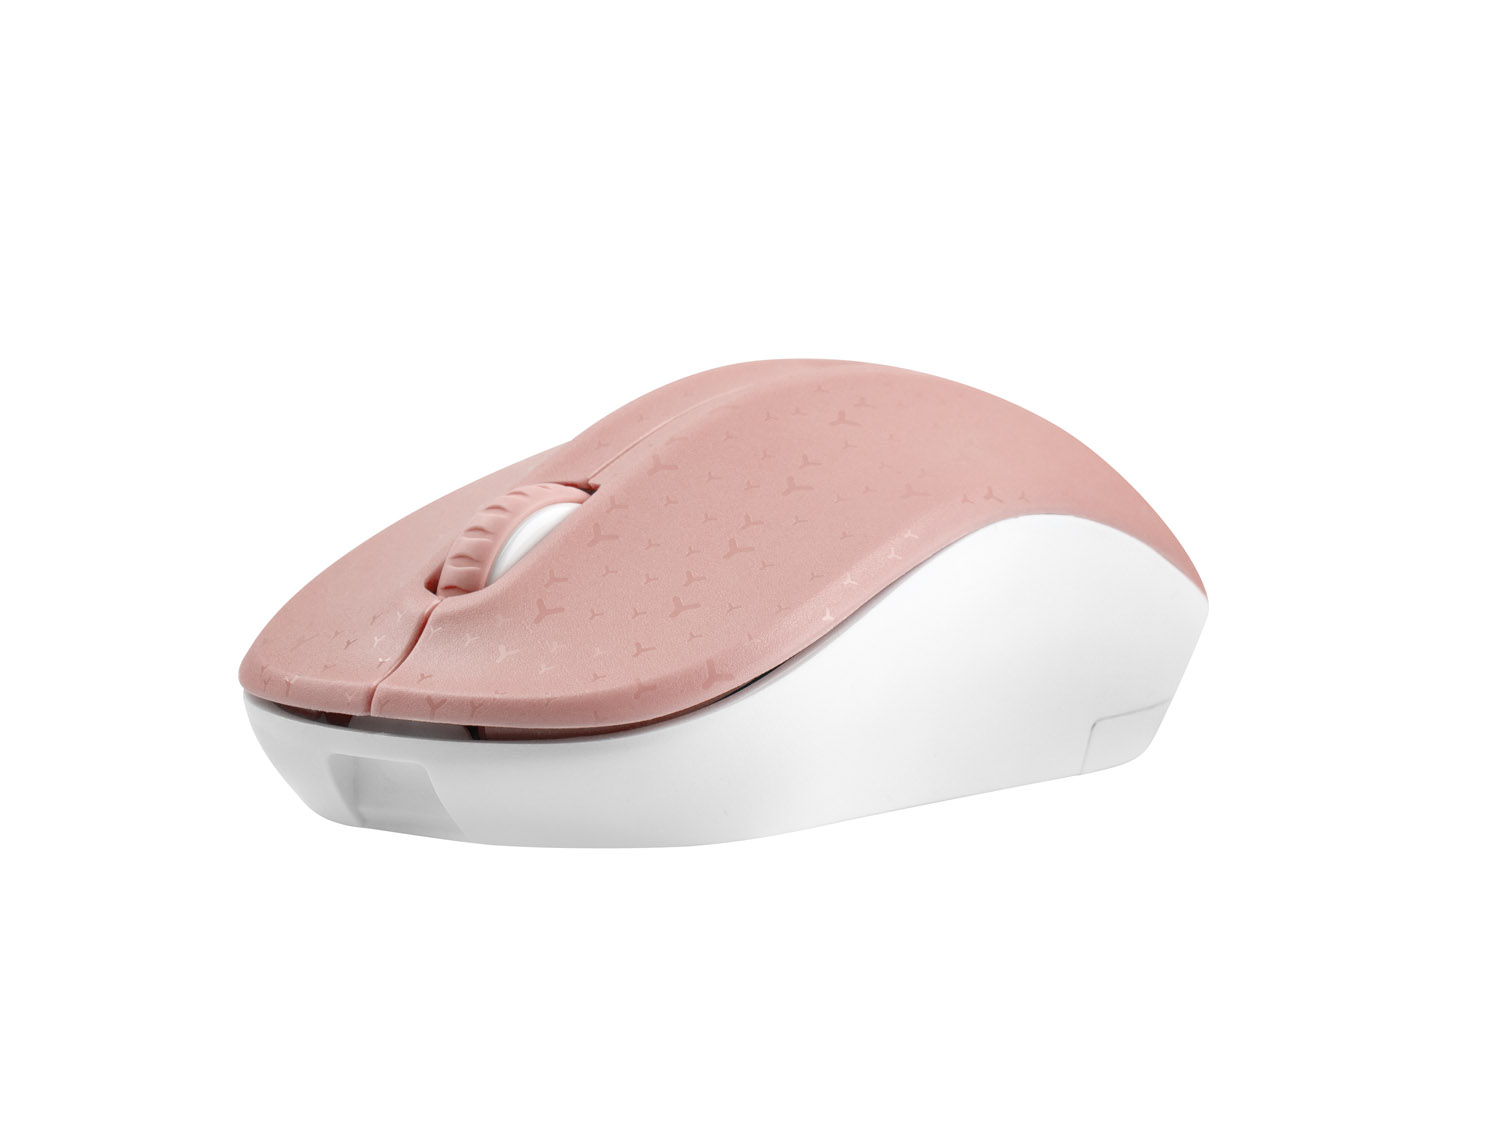 Natec optická myš TOUCAN/ 1600 DPI/ Cestovná/ Optická/ 1 600 DPI/ Bezdrôtová USB/ Biela-ružová 